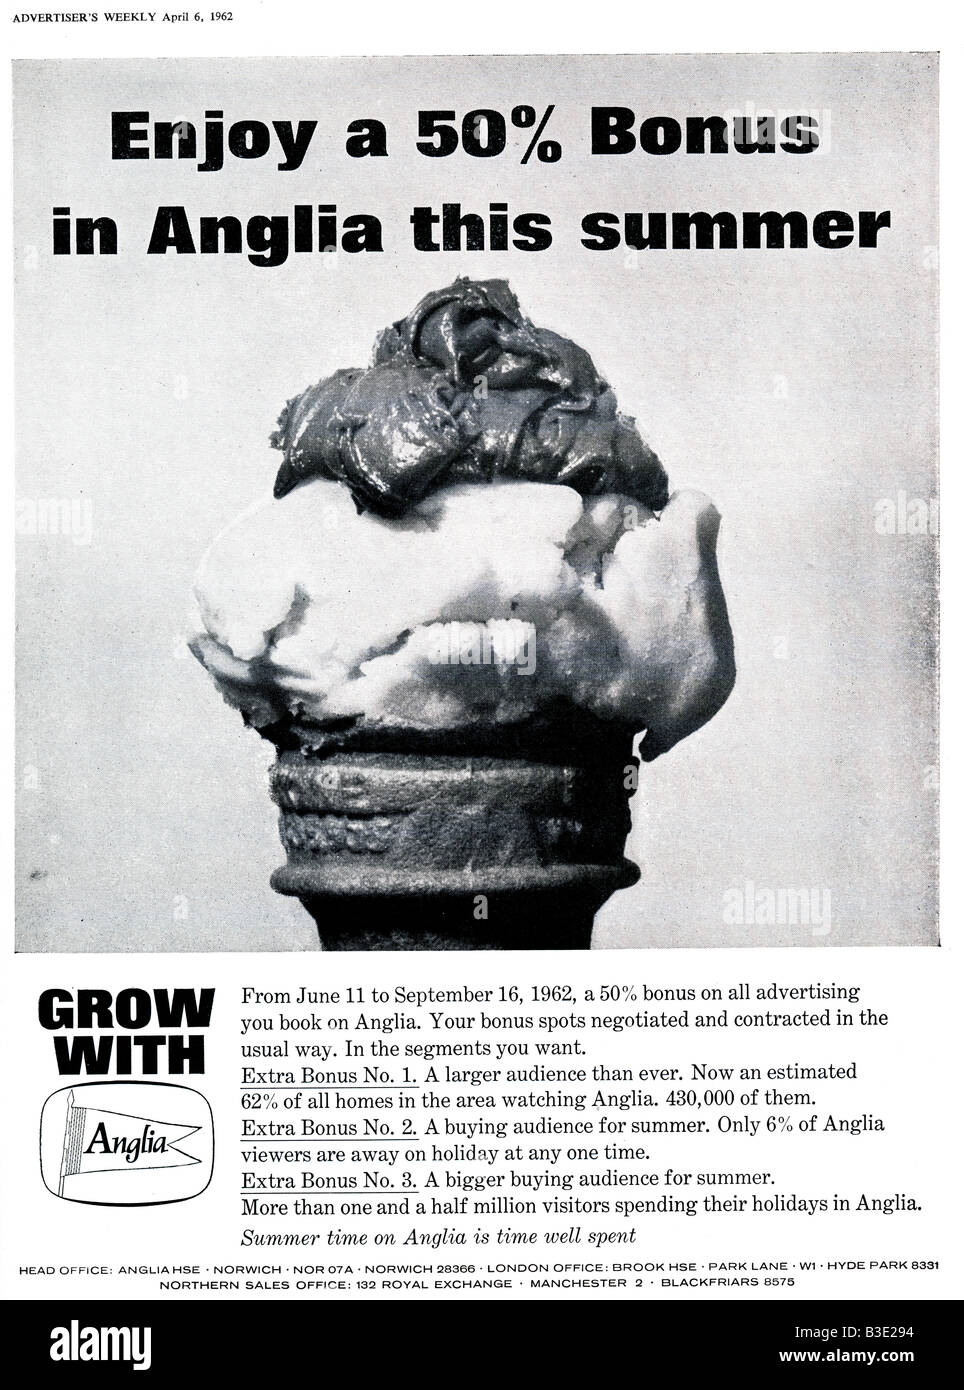 Werbung für kommerzielle Regionalfernsehen Anglia von werbenden Weekly Journal Magazin 6. April 1962 nur zu redaktionellen Zwecken Stockfoto